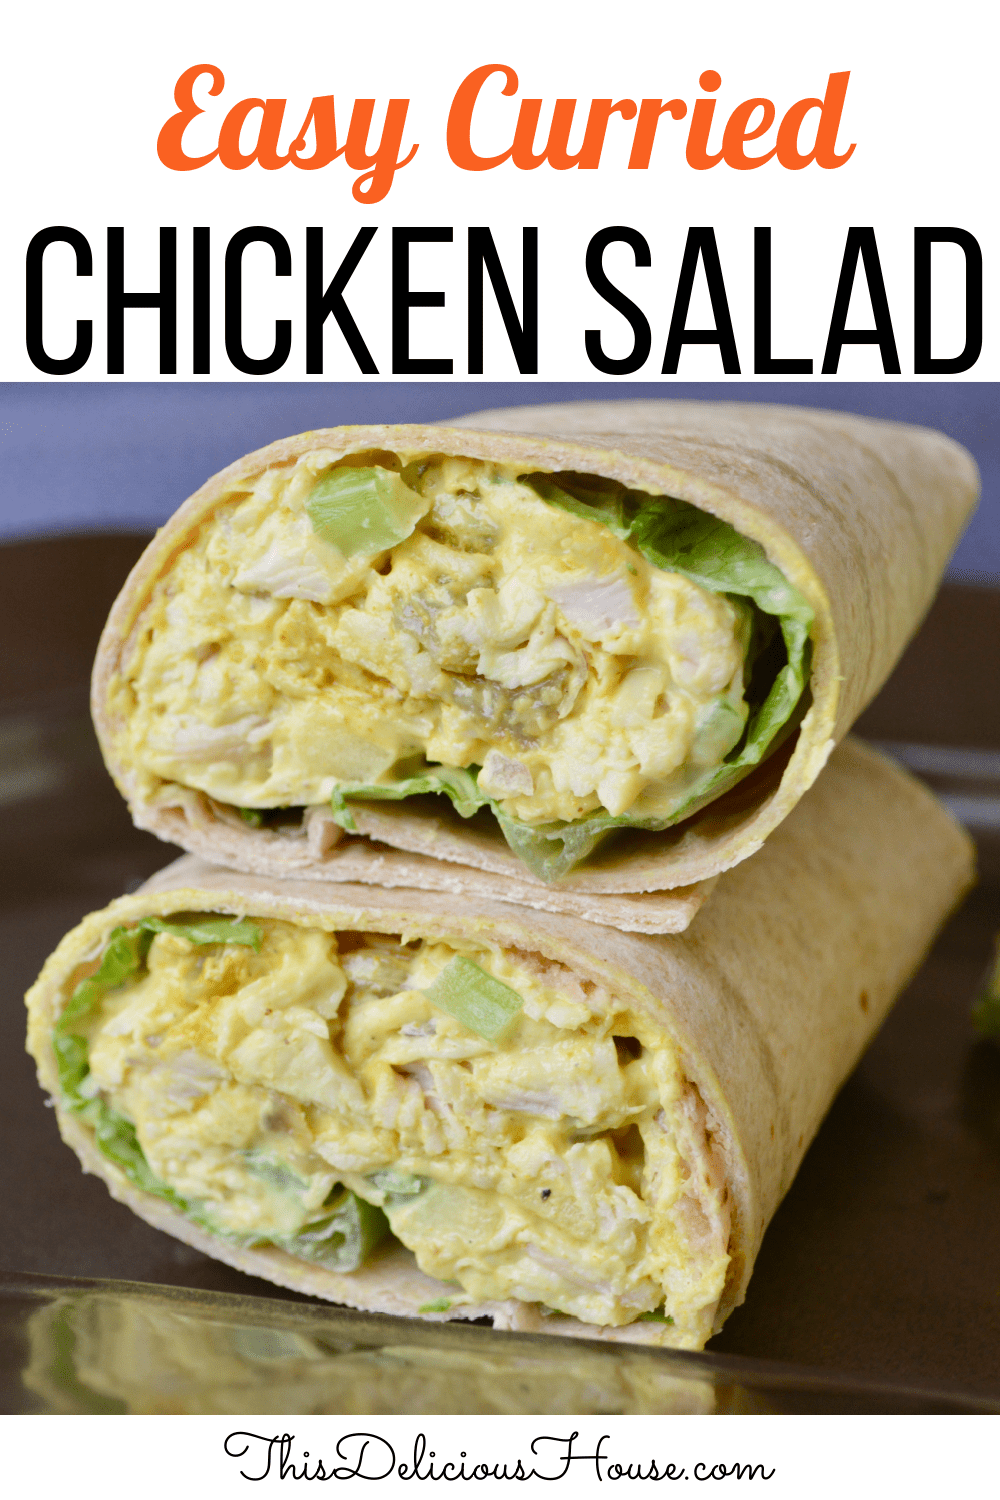 Curried Chicken Salad Wrap. 